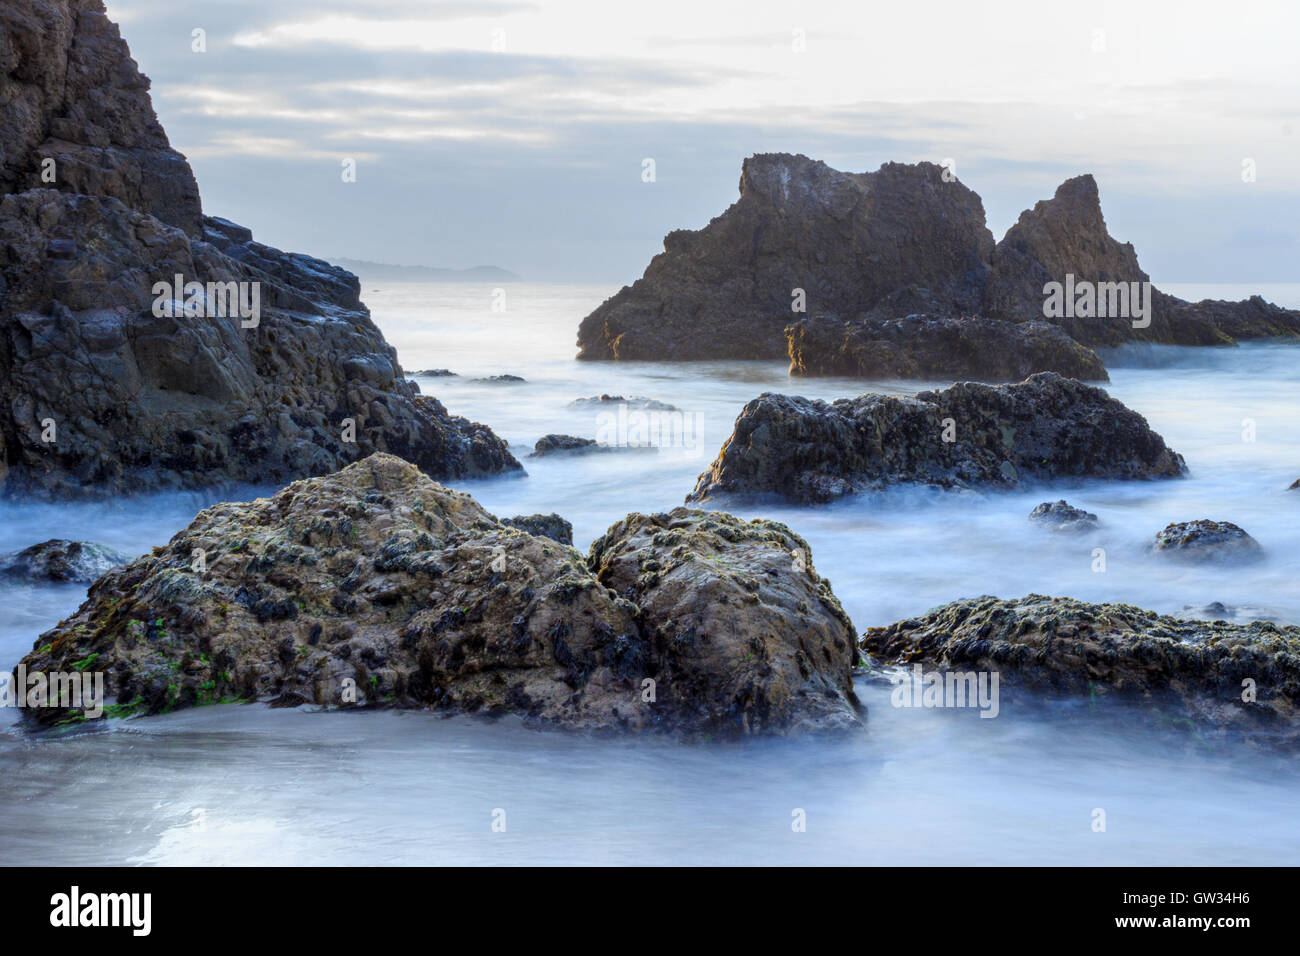 waves surrounding jagged rocks in Malibu Stock Photo